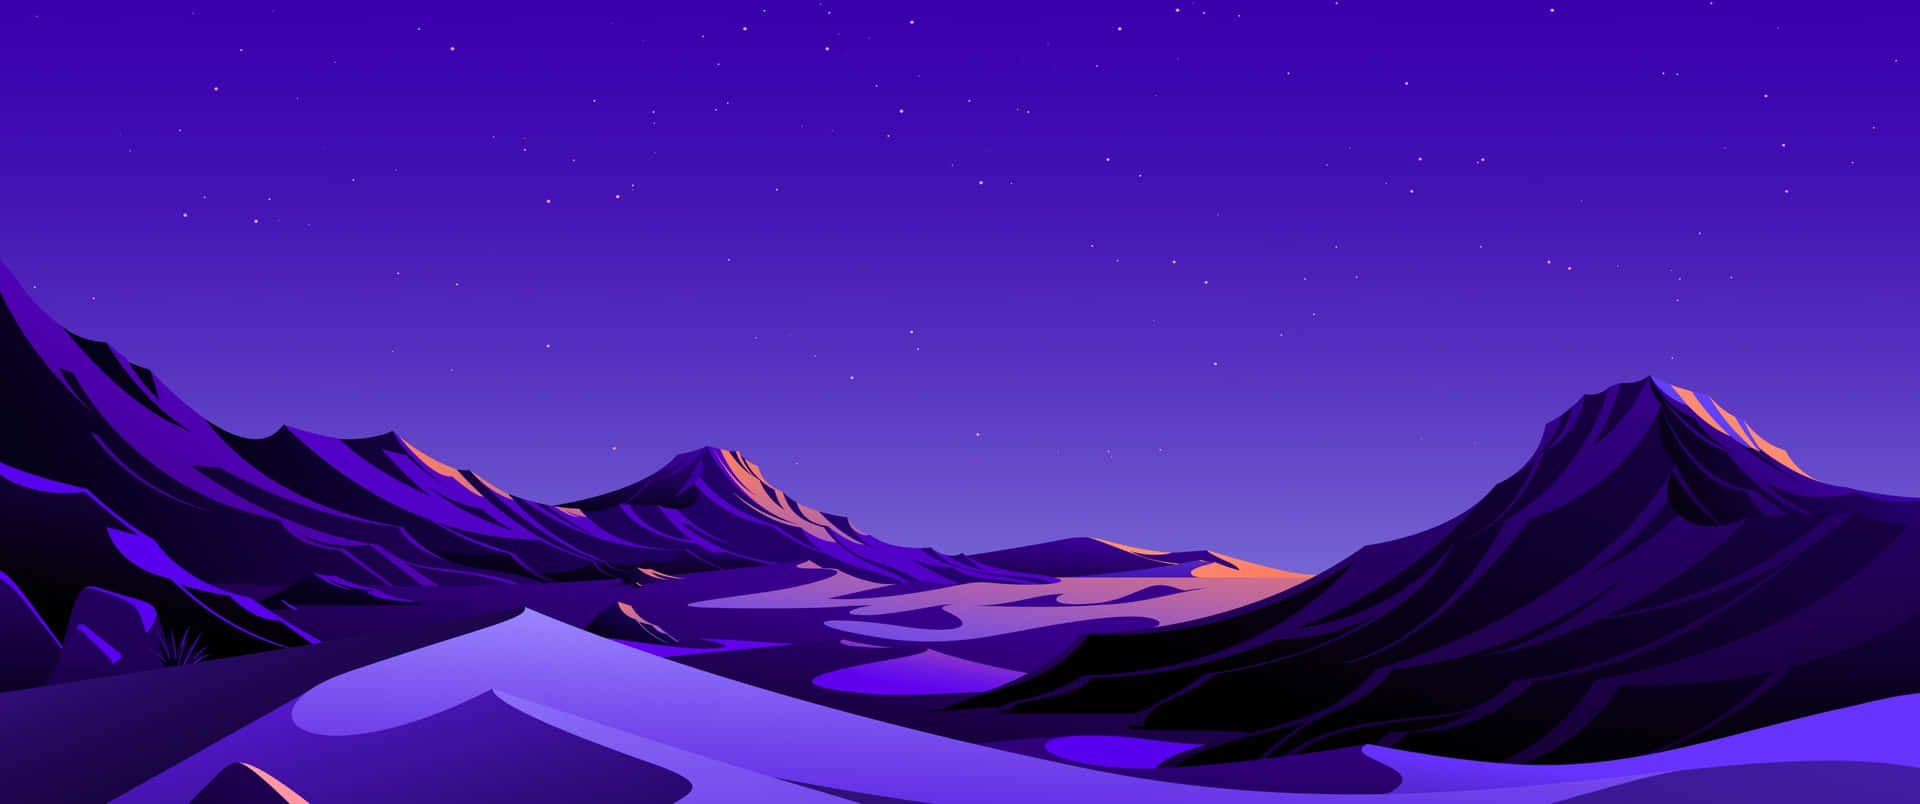 3440x1440p Starry Desert Night Background